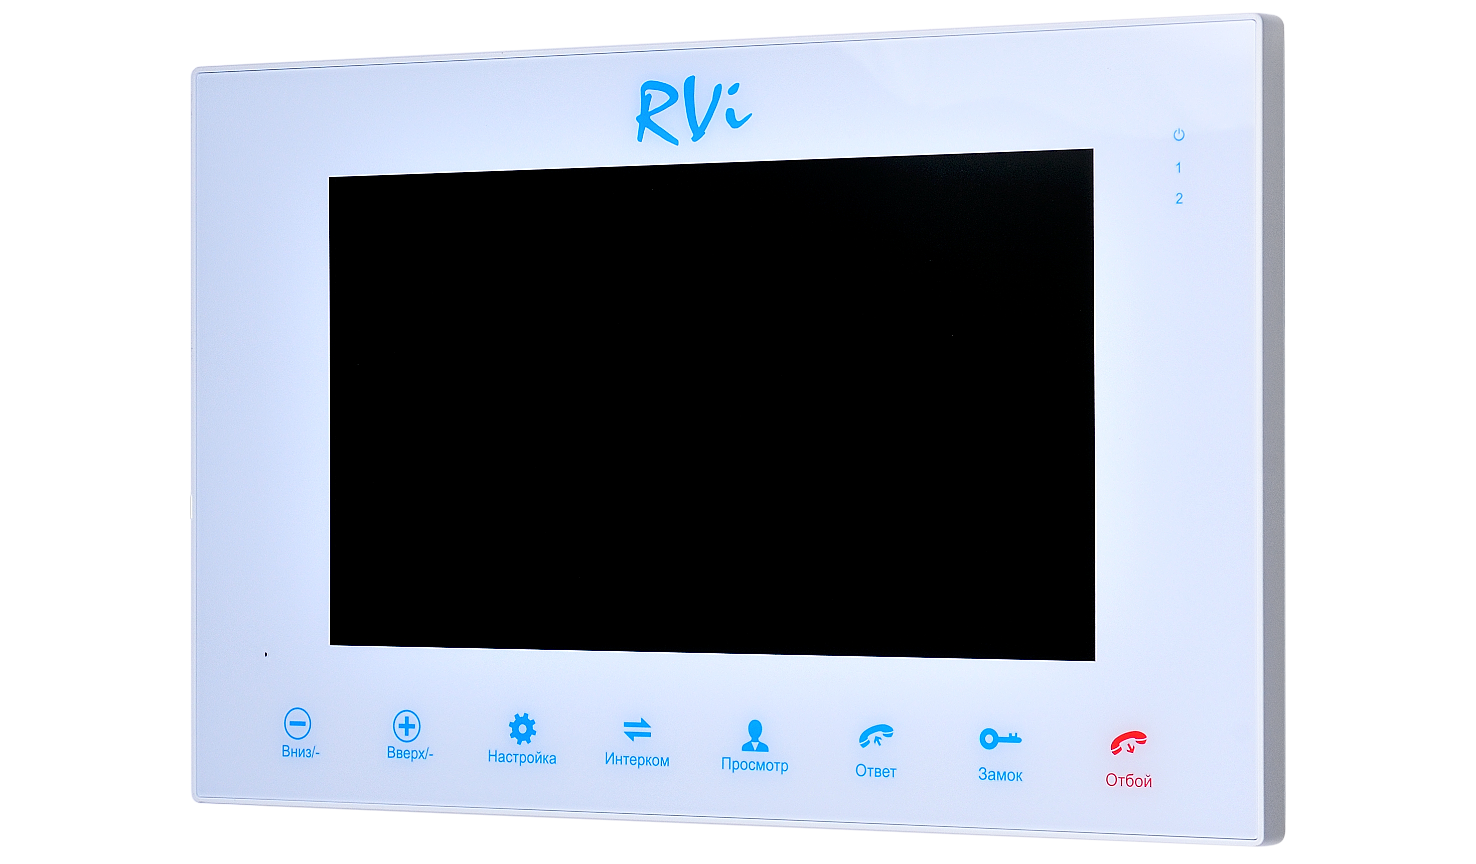 RVi-VD10-11 (белый) - купить в интернет магазине с доставкой, цены, описание, характеристики, отзывы